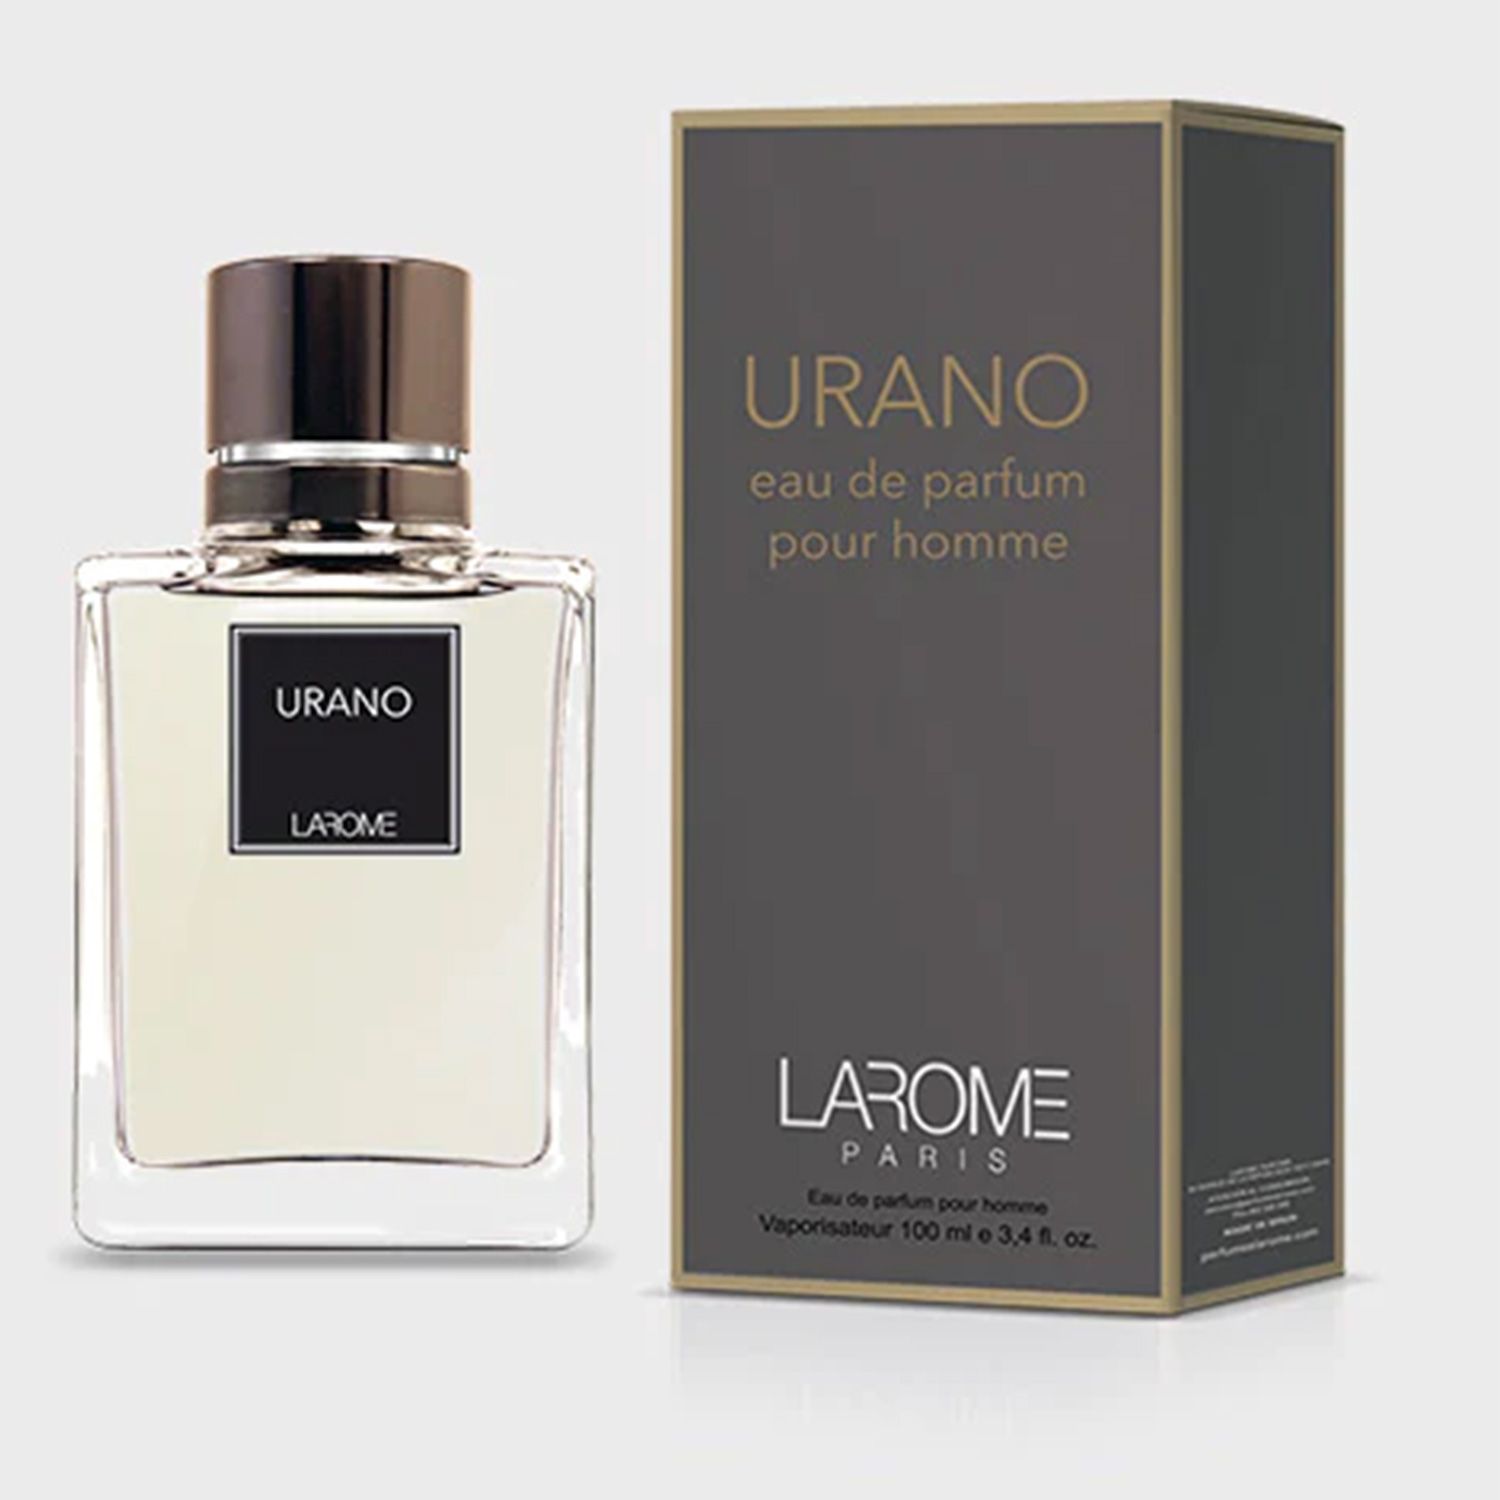 Larome Profumi Larome Urano Eau De Parfum Uomo 100ml